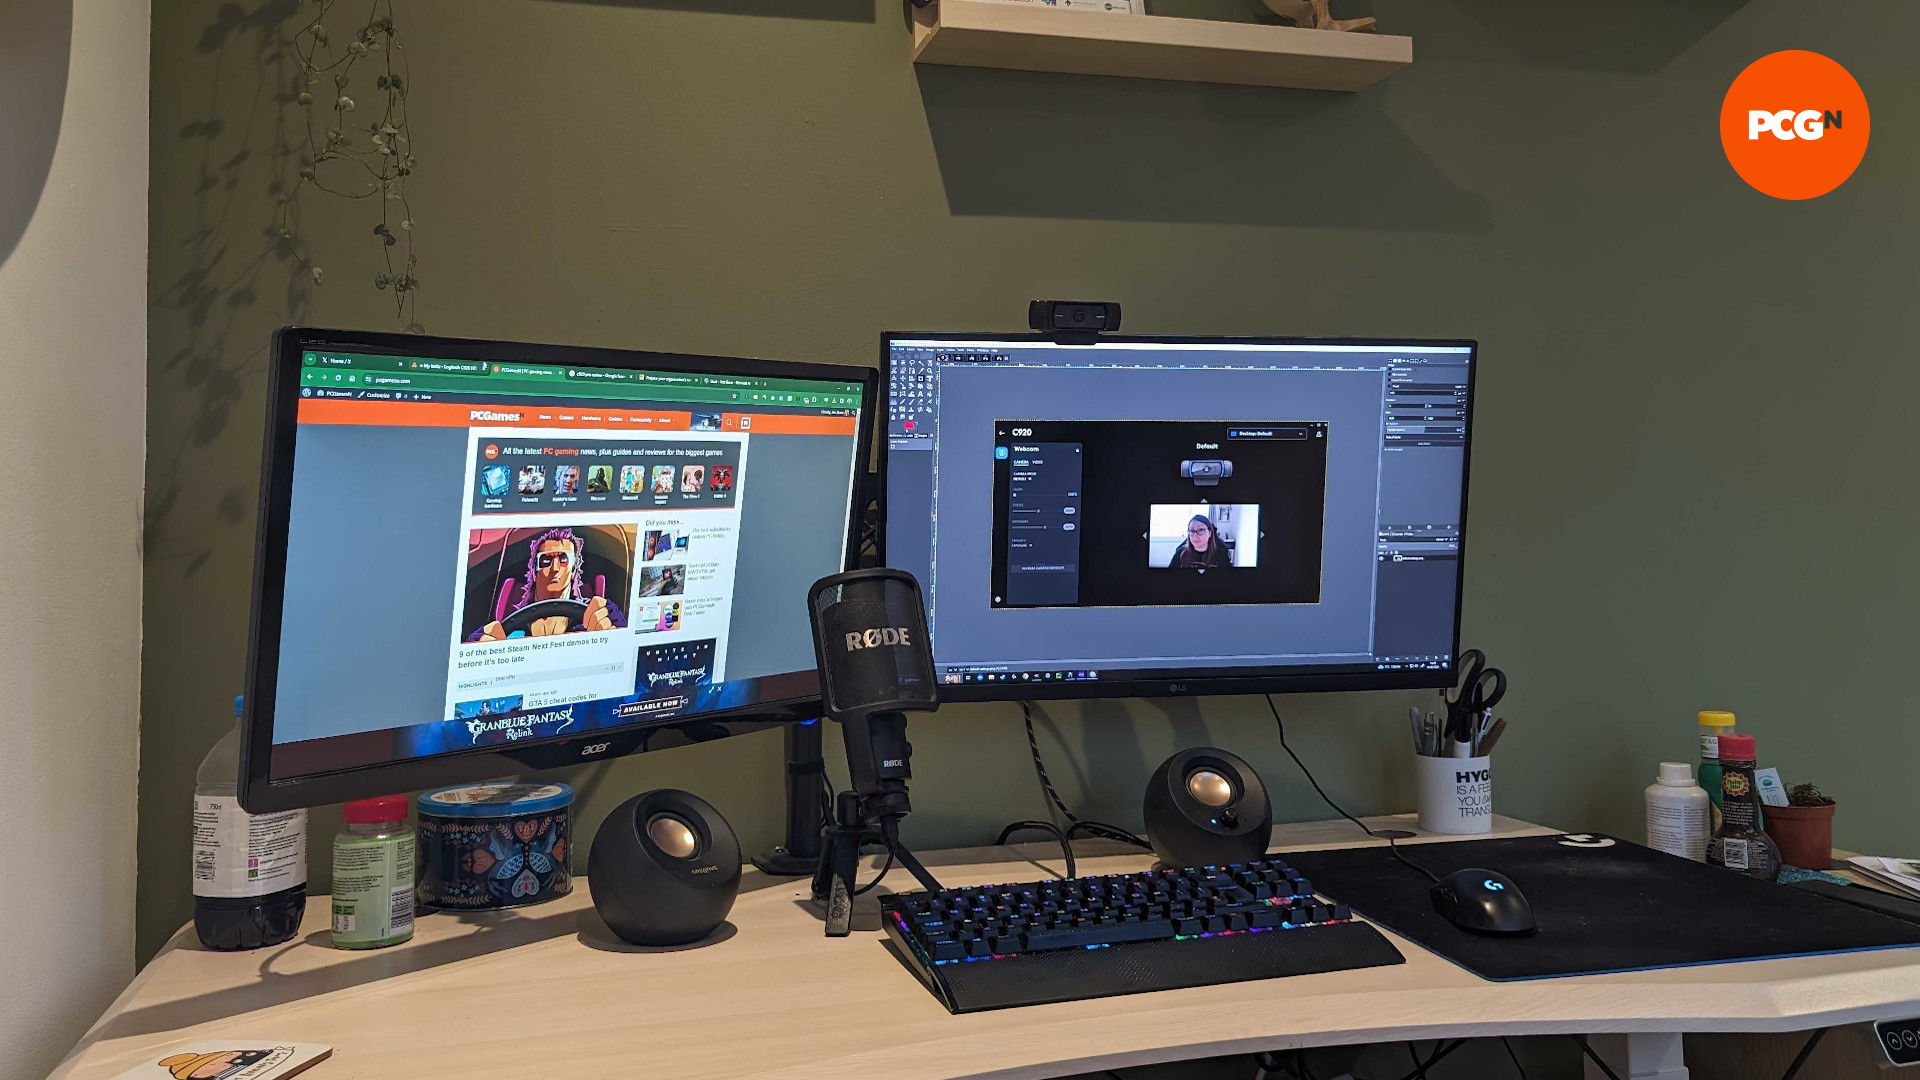 La webcam Logitech C920 HD Pro sur une configuration de bureau de jeu